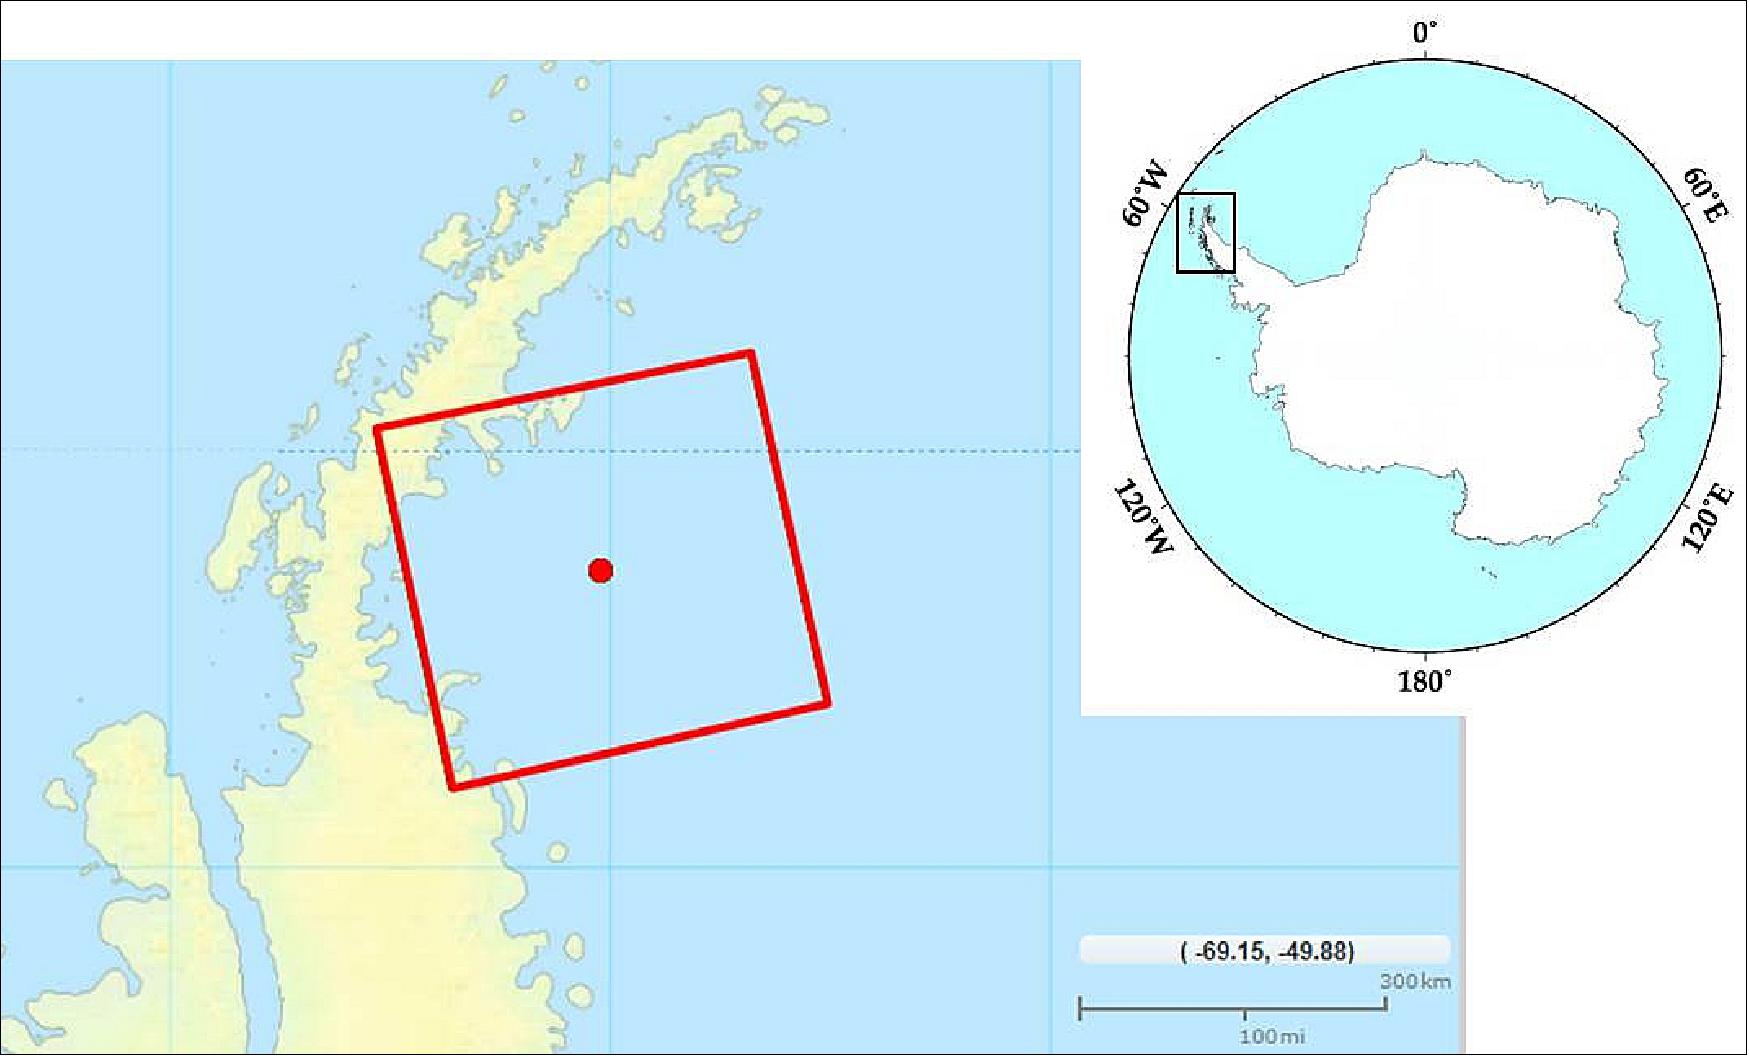 Figure 32: Antarctica observation area of ALOS-2 (image credit: JAXA)